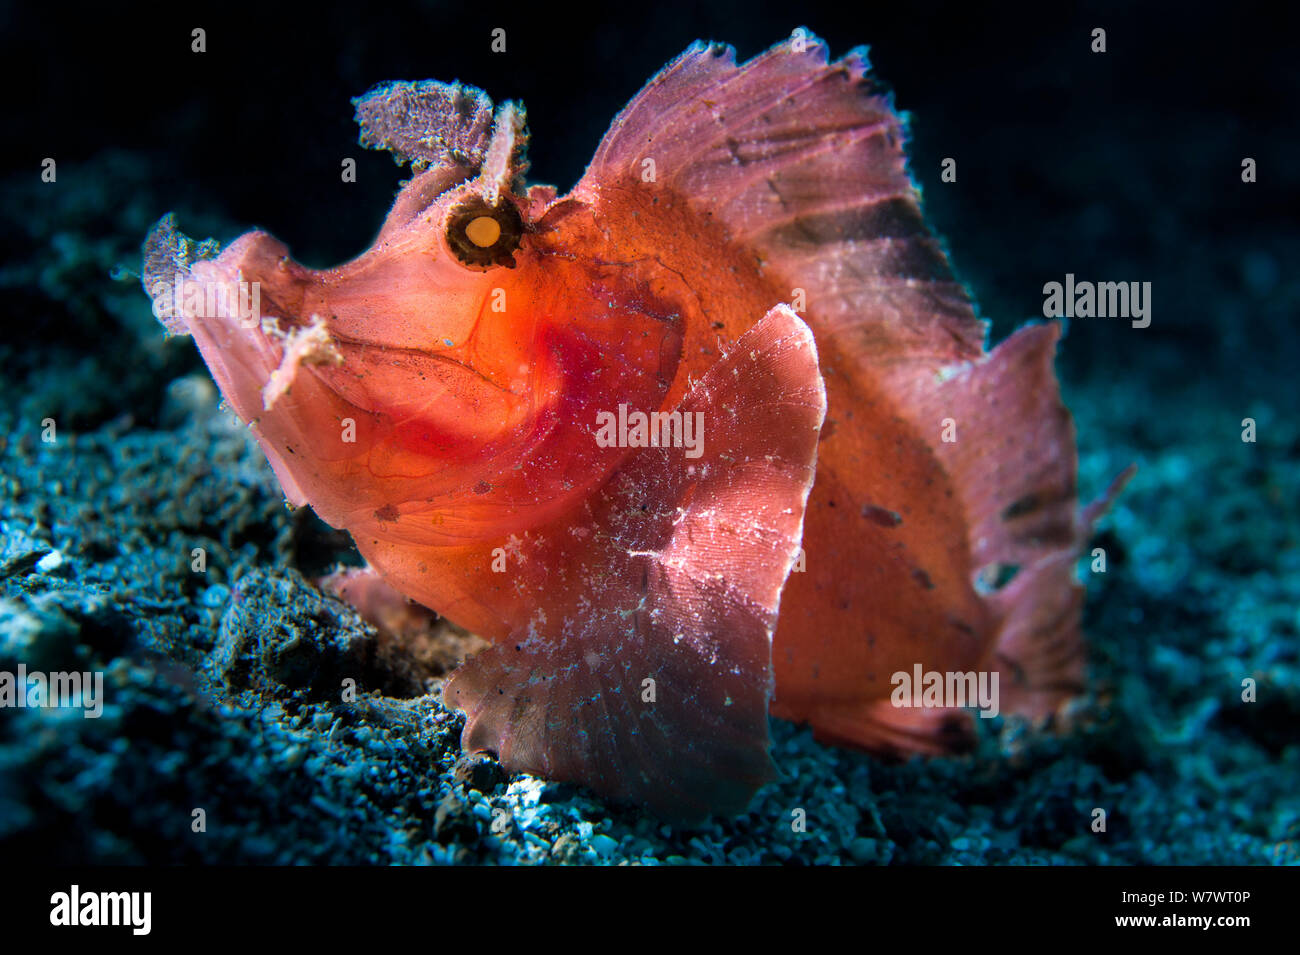 Hintergrundbeleuchtung Portrait von Paddel-Klappe scorpionfish (Rhinopias eschmeyeri) auf Schotter Piste. Bitung, Nord Sulawesi, Indonesien. Lembeh Strait, Molukken Meer. Stockfoto